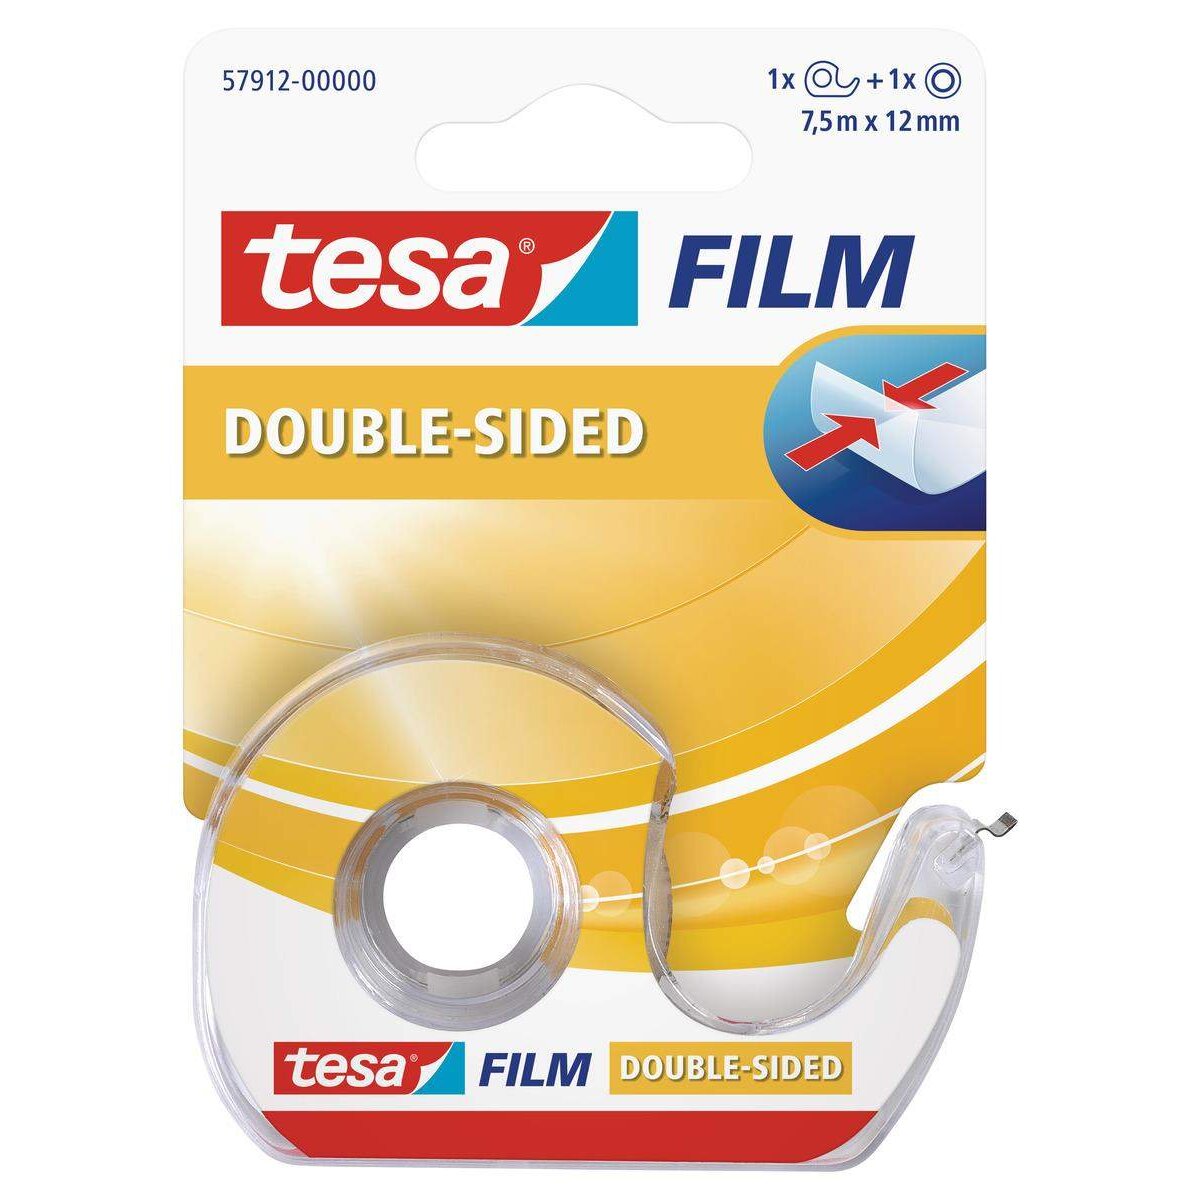 tesa Abroller inkl. 1 Rolle tesafilm doppelseitig 7,5mx12mm